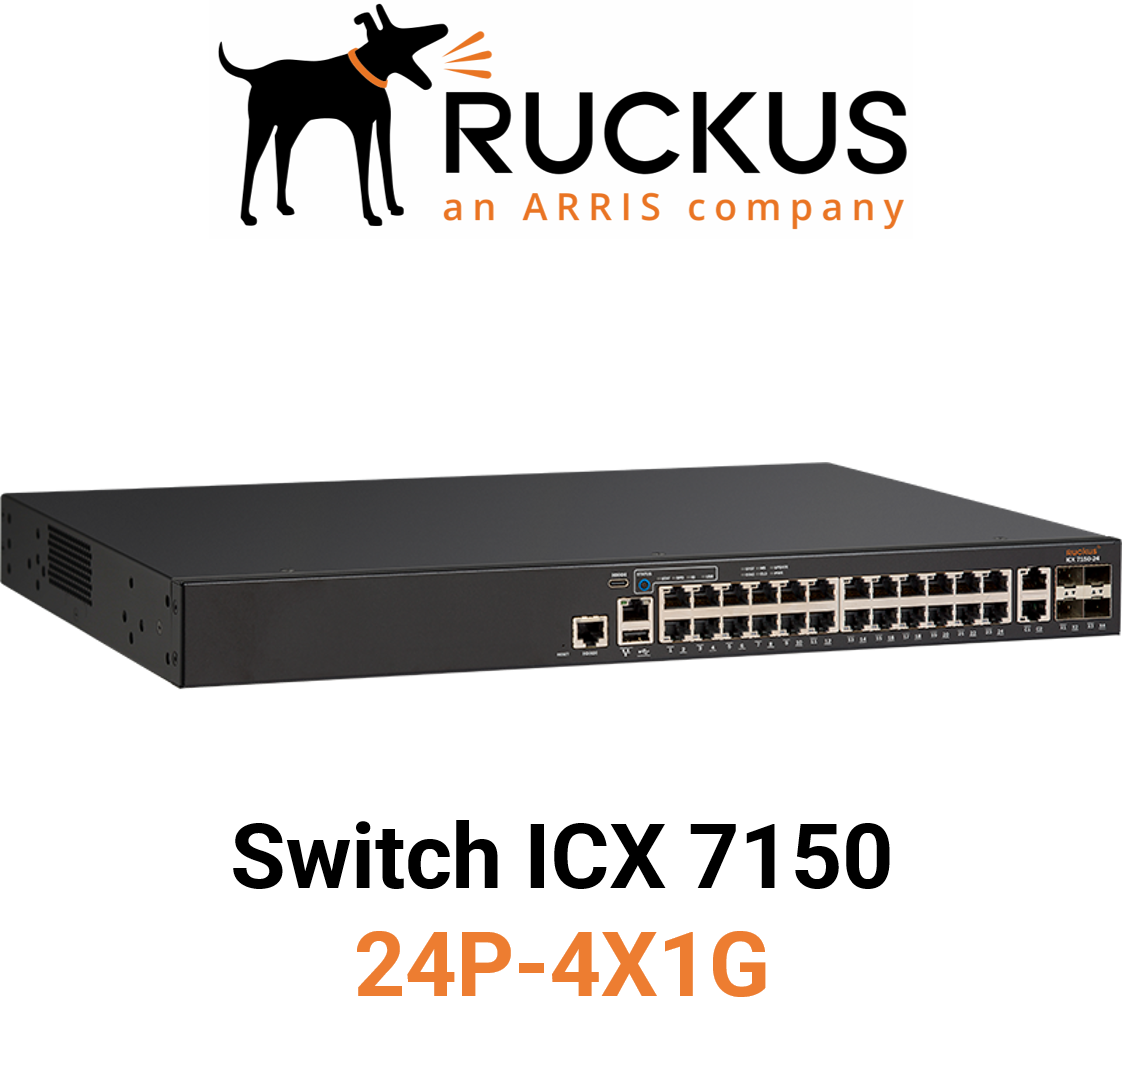 Ruckus ICX7150-24P-4X1G Switch